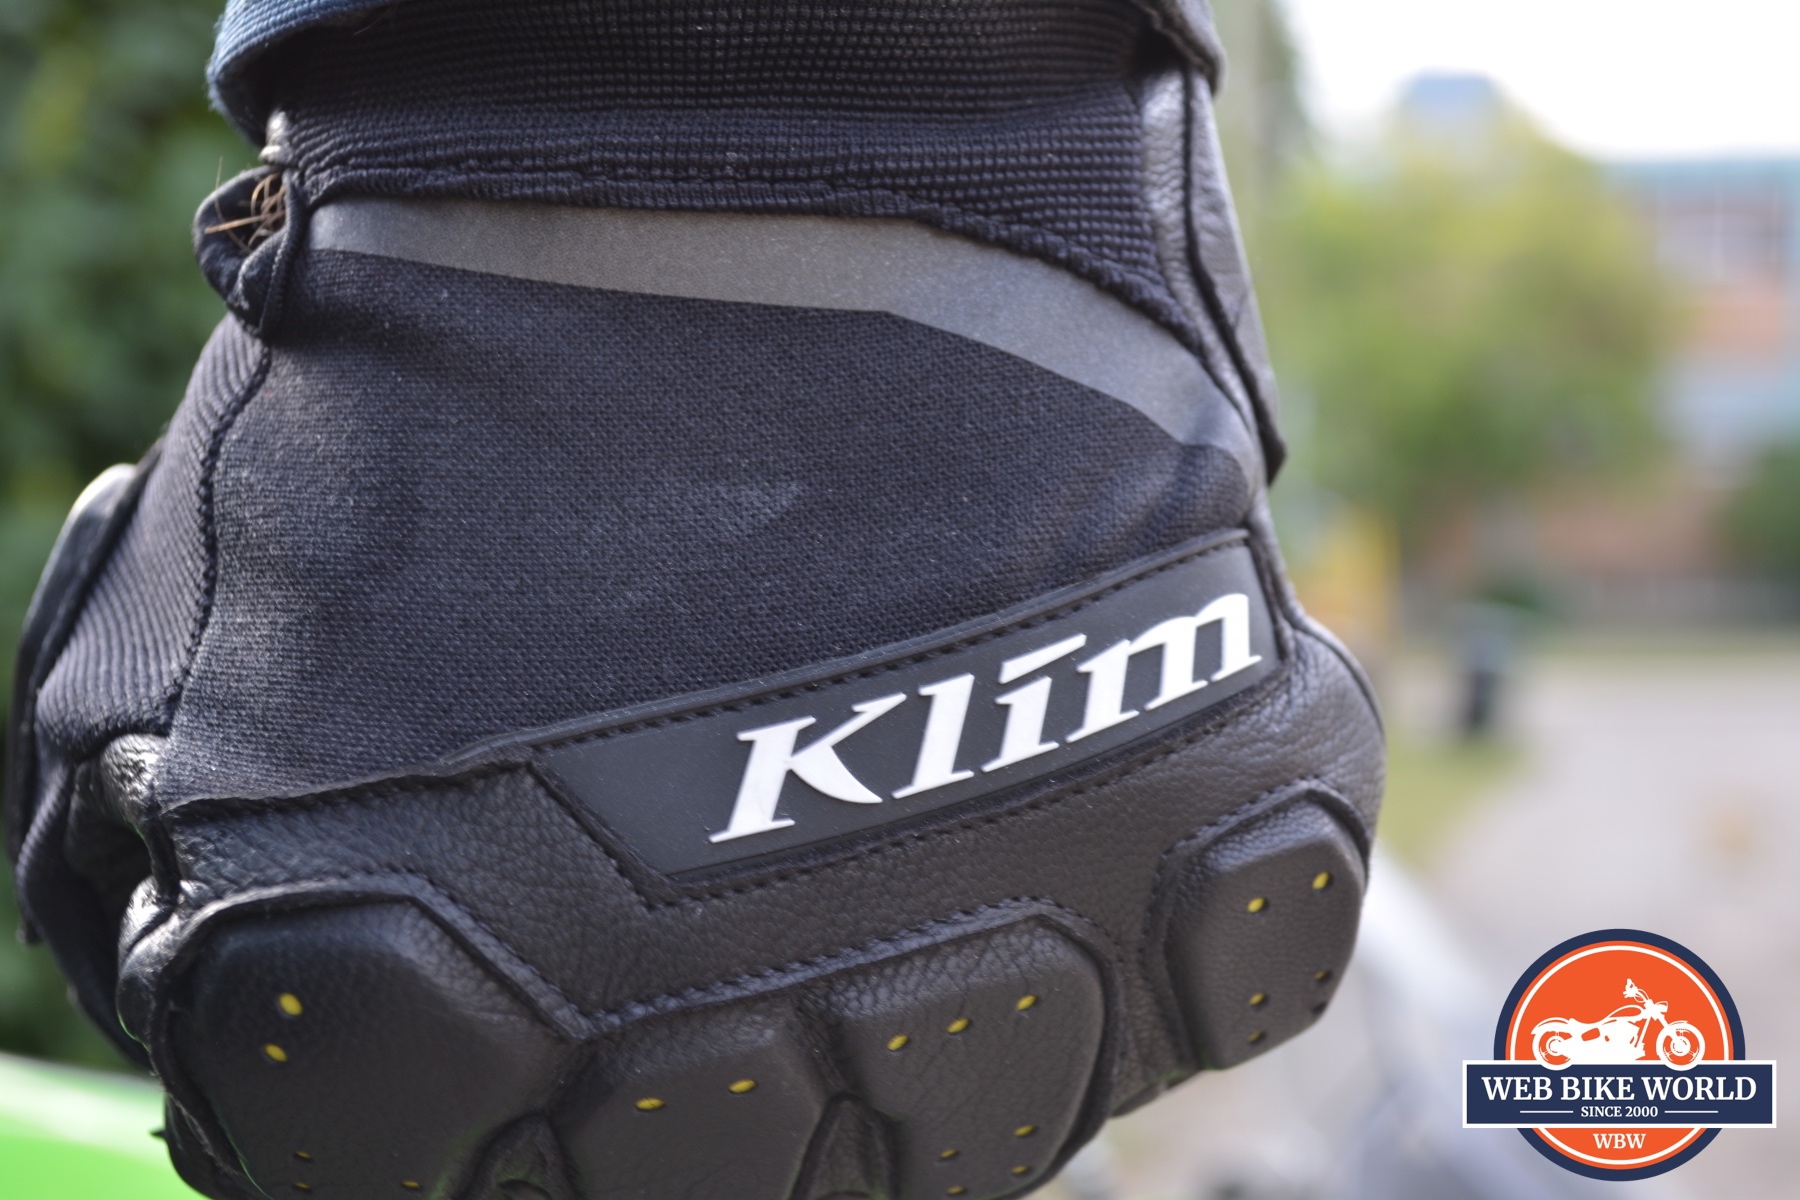 KLIM Poron XRD showing in the knuckles of the KLIM Dakar Pro gloves